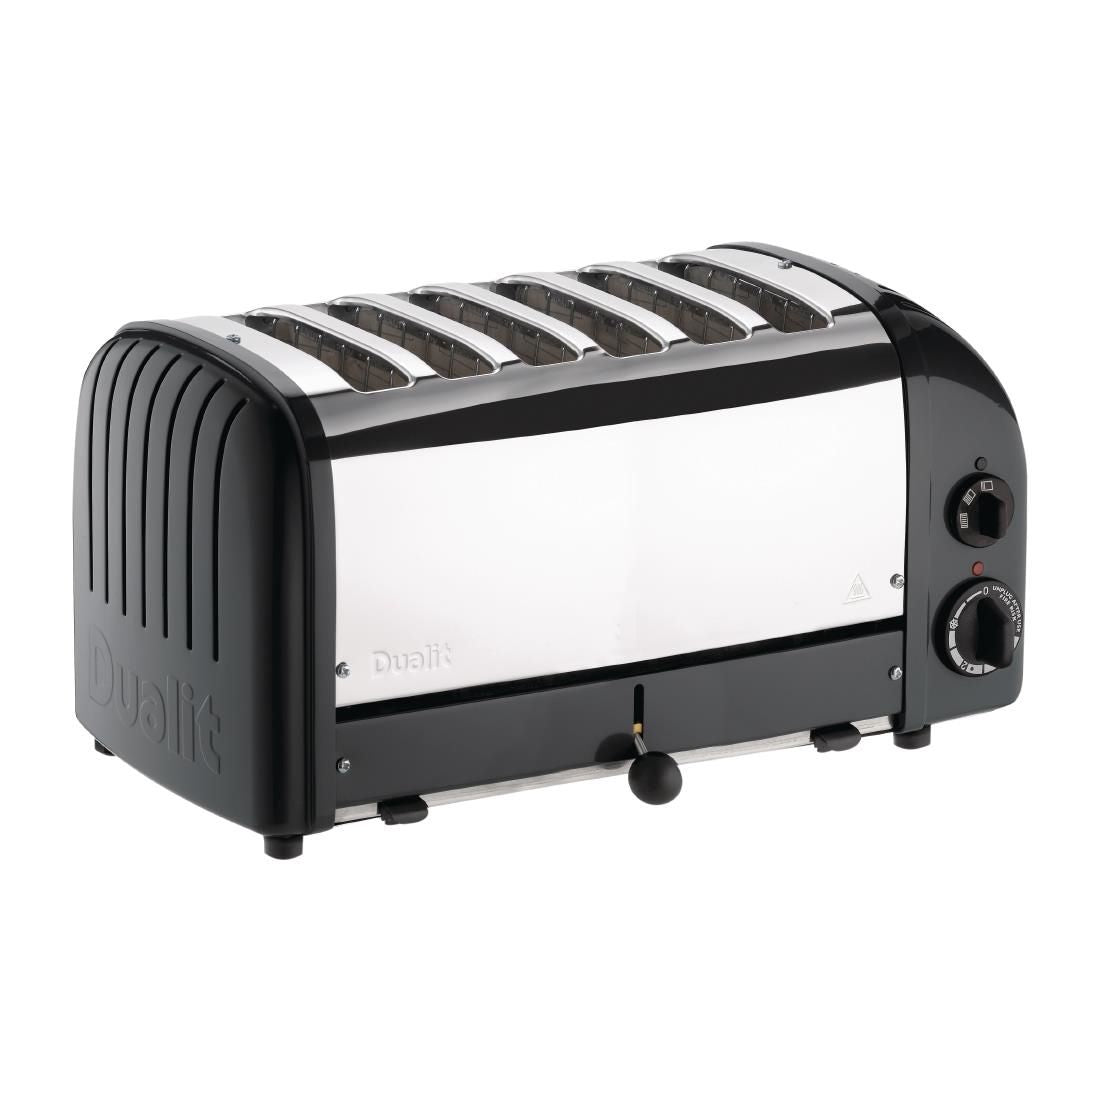 Dualit 6 Slice Vario Toaster Black 60145 - E267 Toasters Dualit   